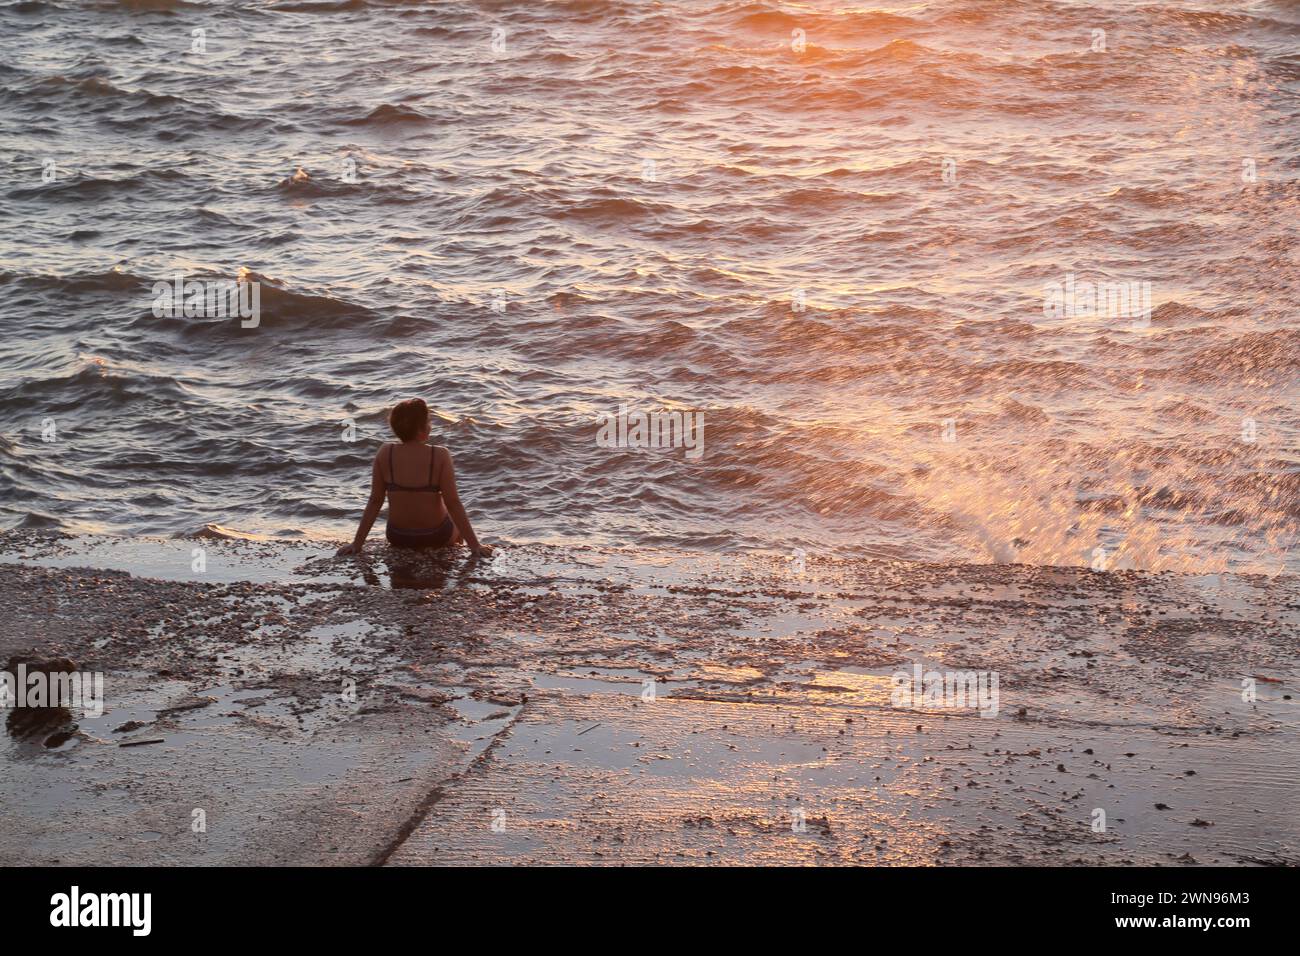 Turista seduto in mare con marea in arrivo che si schianta contro il muro Vouliagmeni Atene Grecia Foto Stock